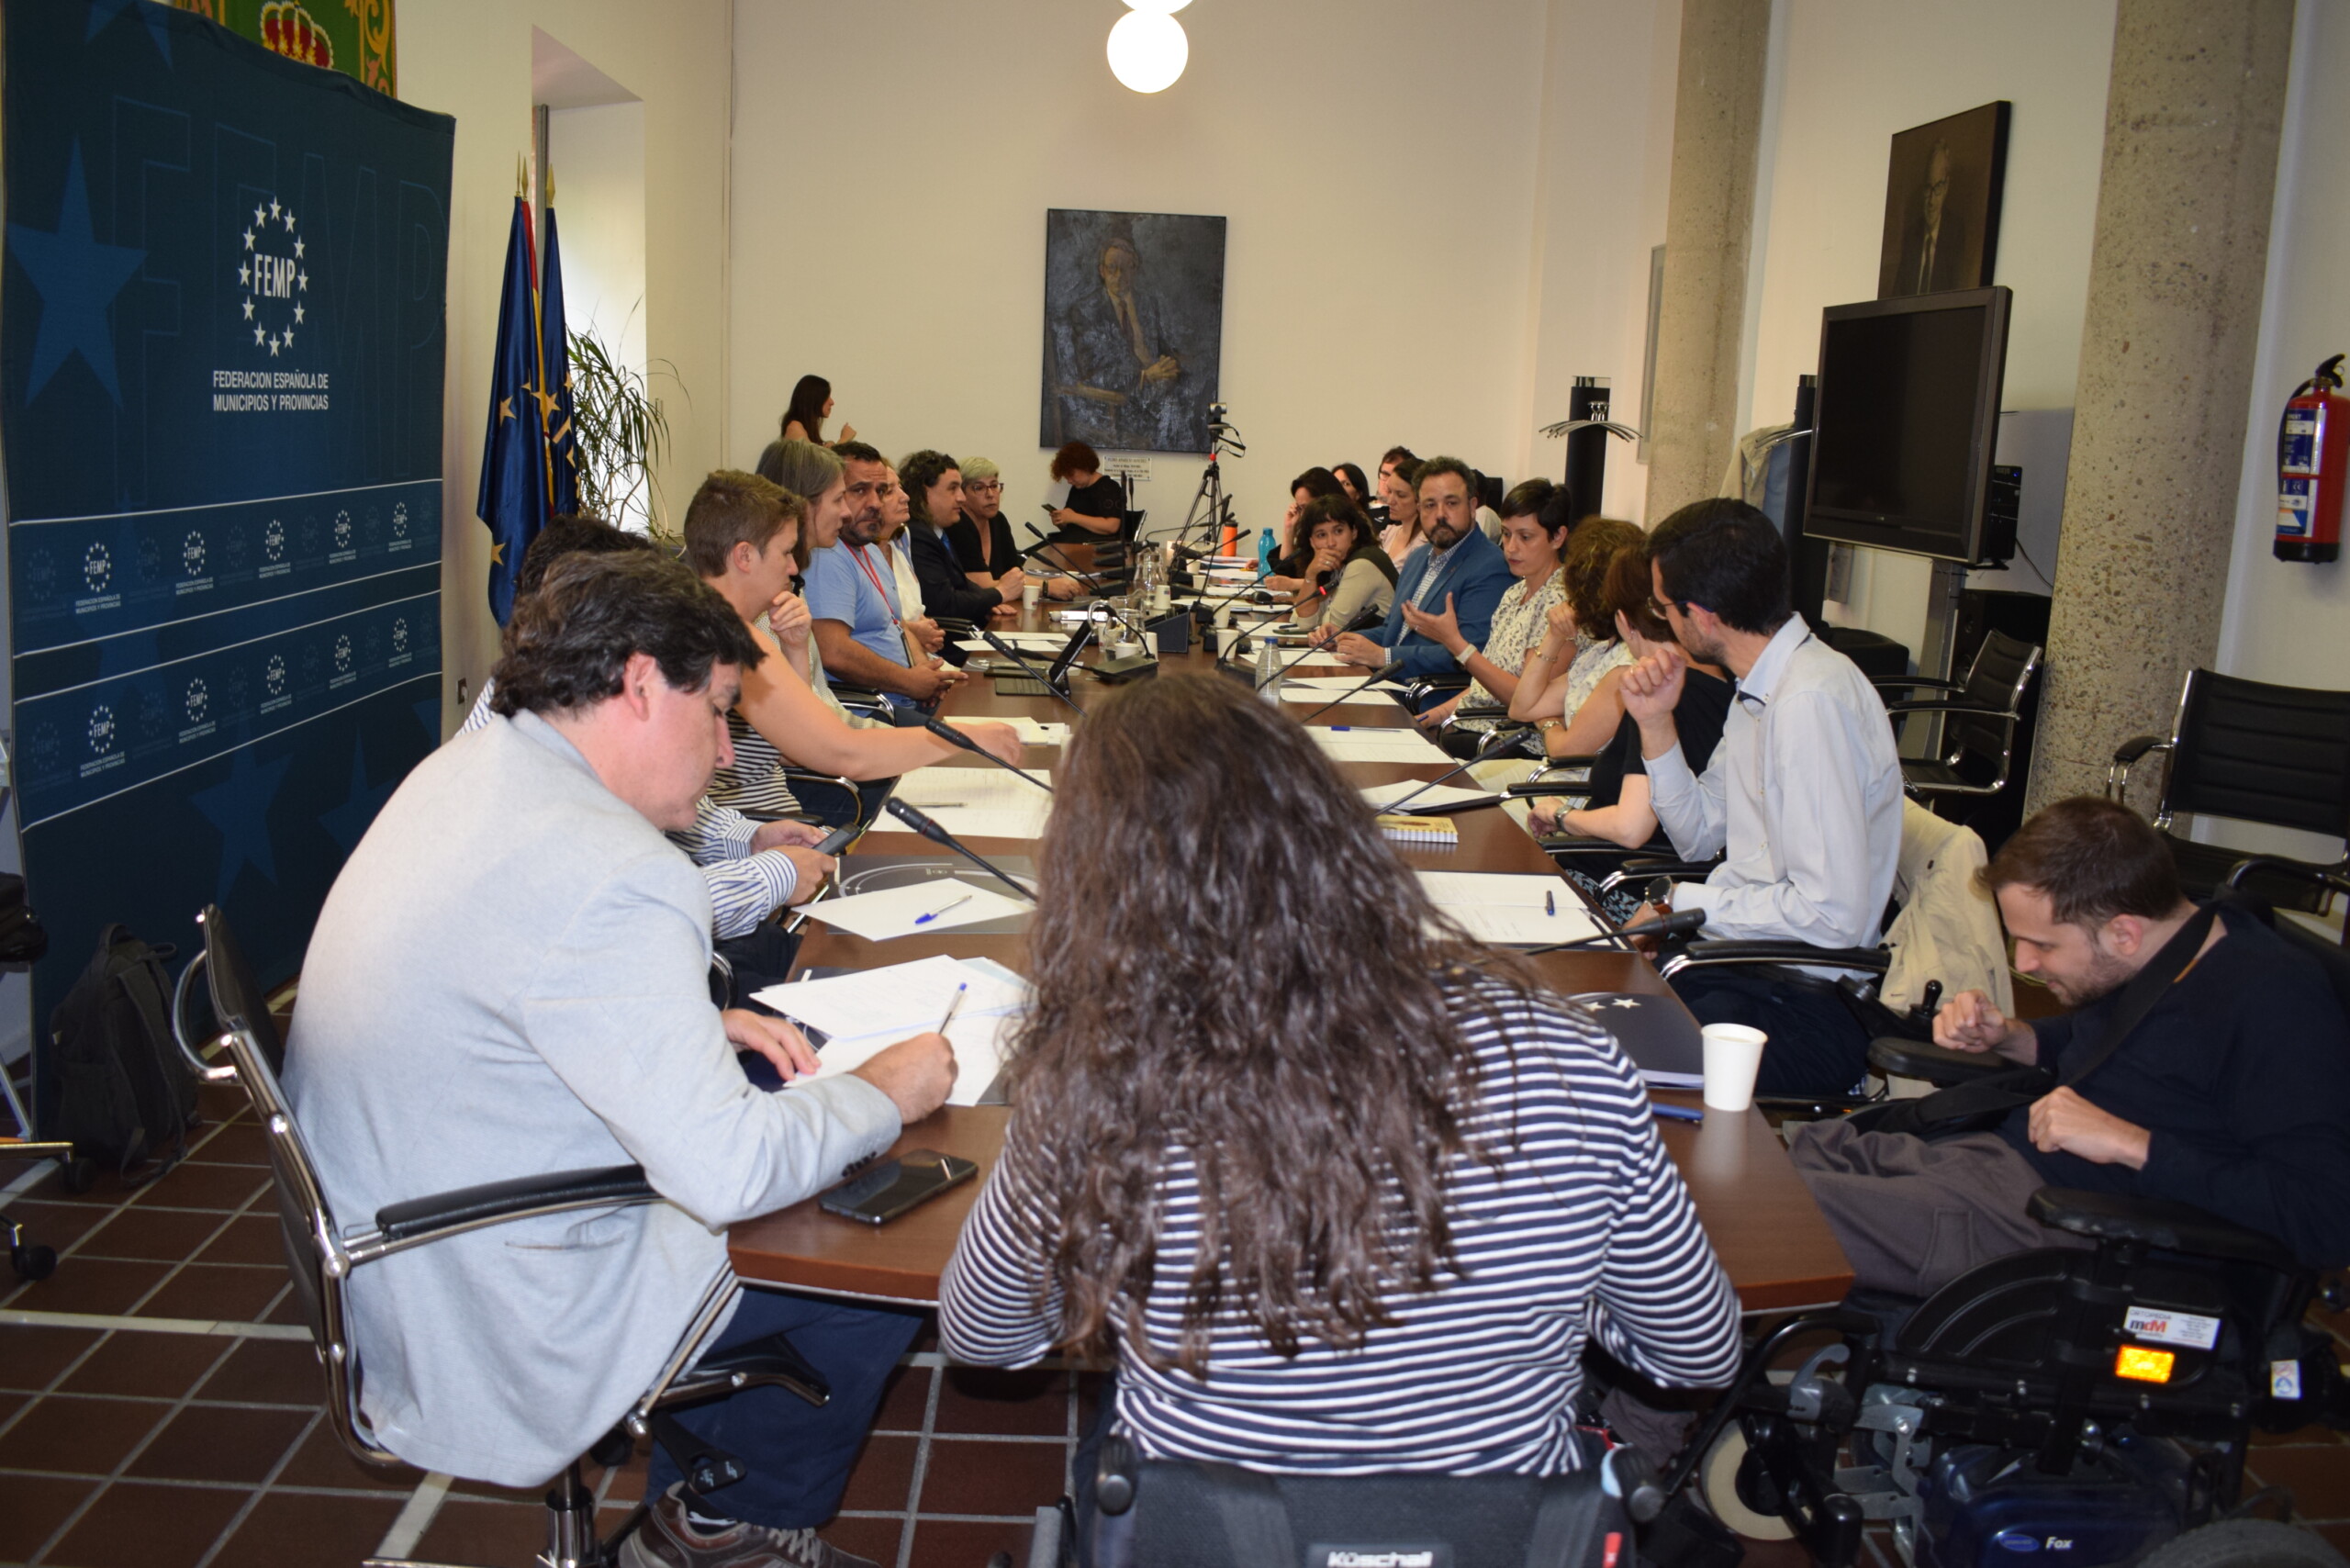 Varias personas, hombres y mujeres, sentados alrededor de una mesa alargada, debaten sobre accesibilidad en la sede la de Federación Española de Municipios y Provincias